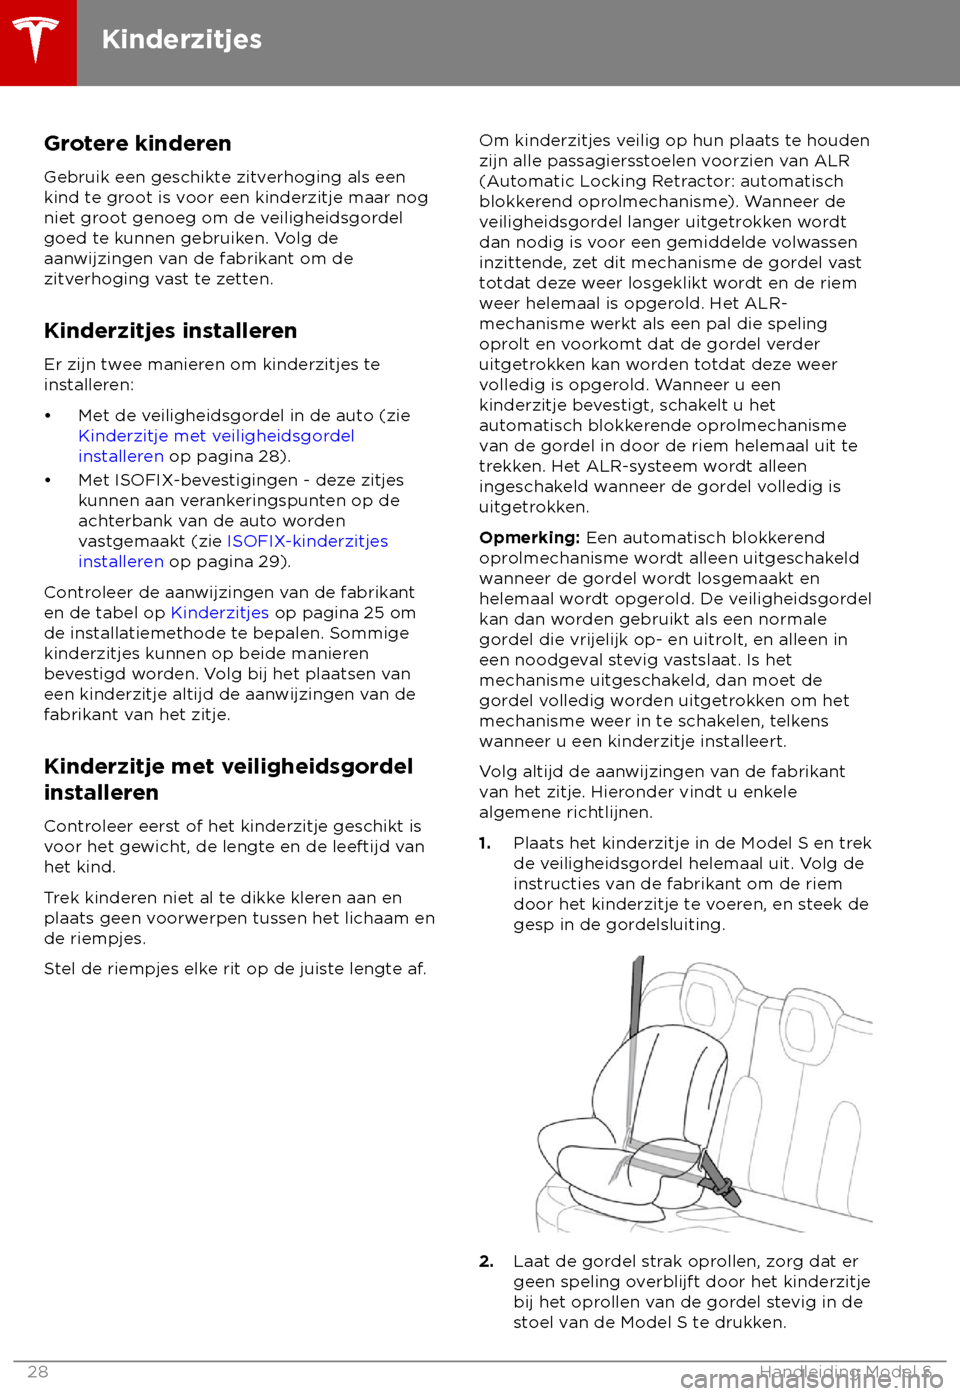 TESLA MODEL S 2018  Handleiding (in Dutch) Grotere kinderen
Gebruik een geschik
te zitverhoging als een
kind te groot is voor een kinderzitje maar nog
niet groot genoeg om de veiligheidsgordel
goed te kunnen gebruiken. Volg de
aanwijzingen van